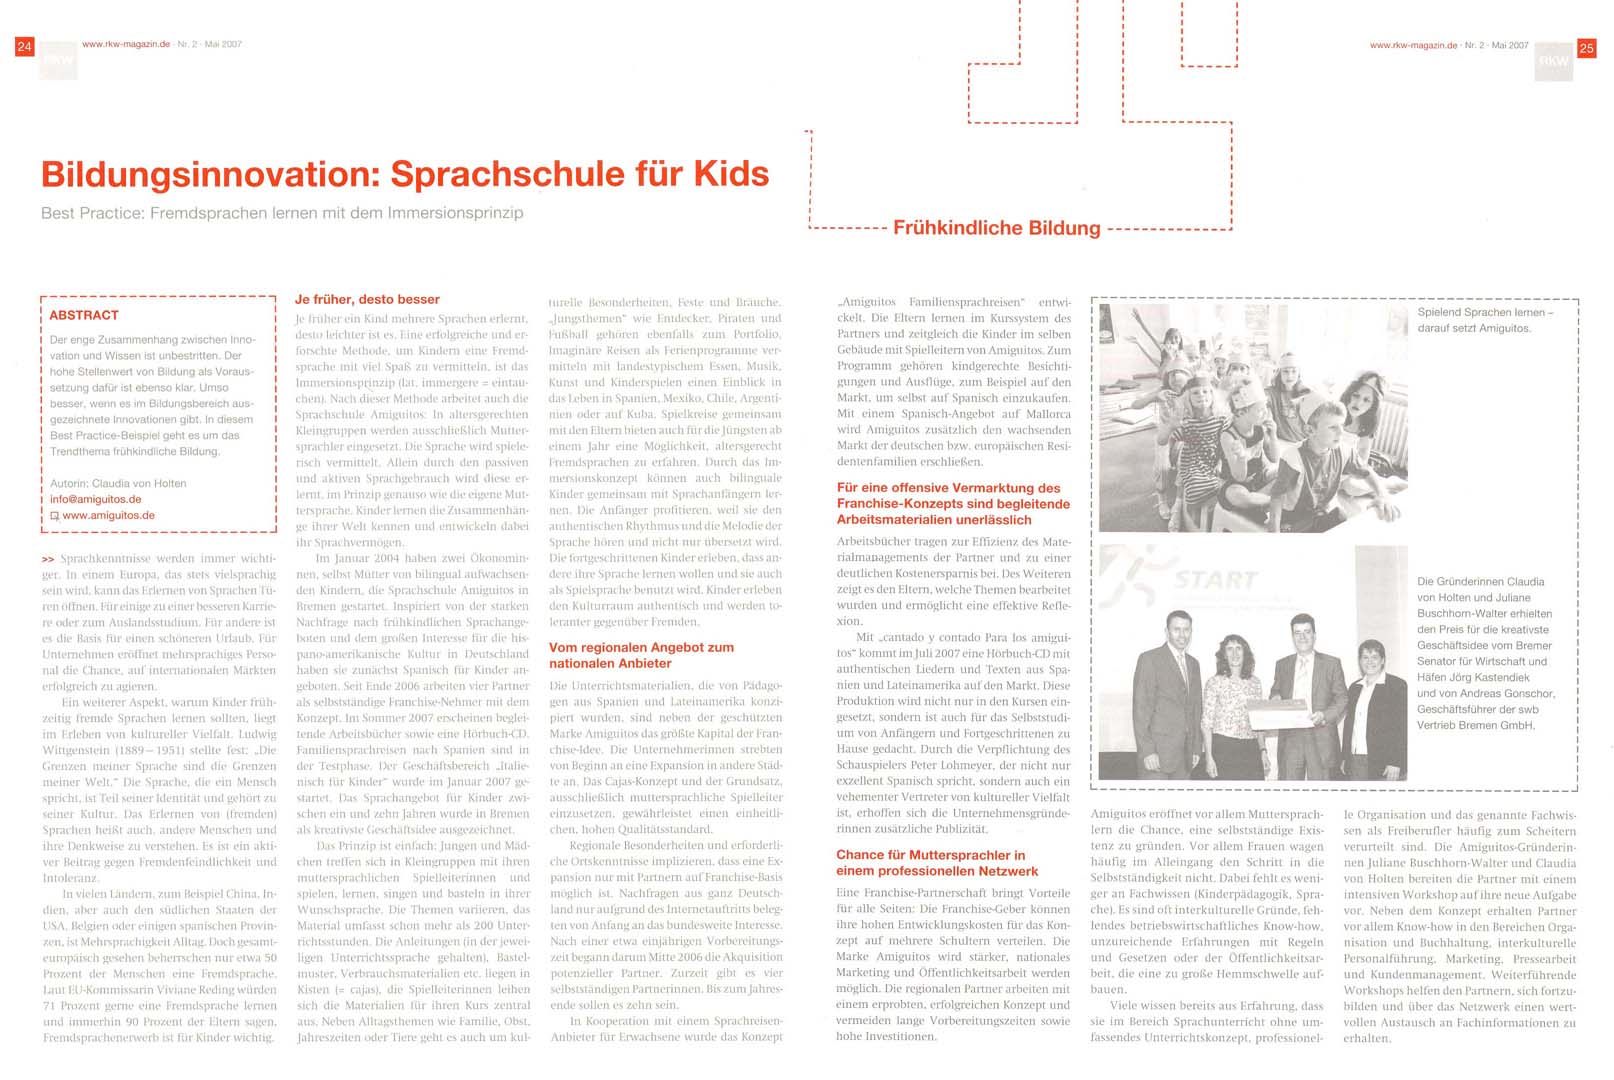 RKW Magazin 'Wissen und Weiterbildung', Mai 2007